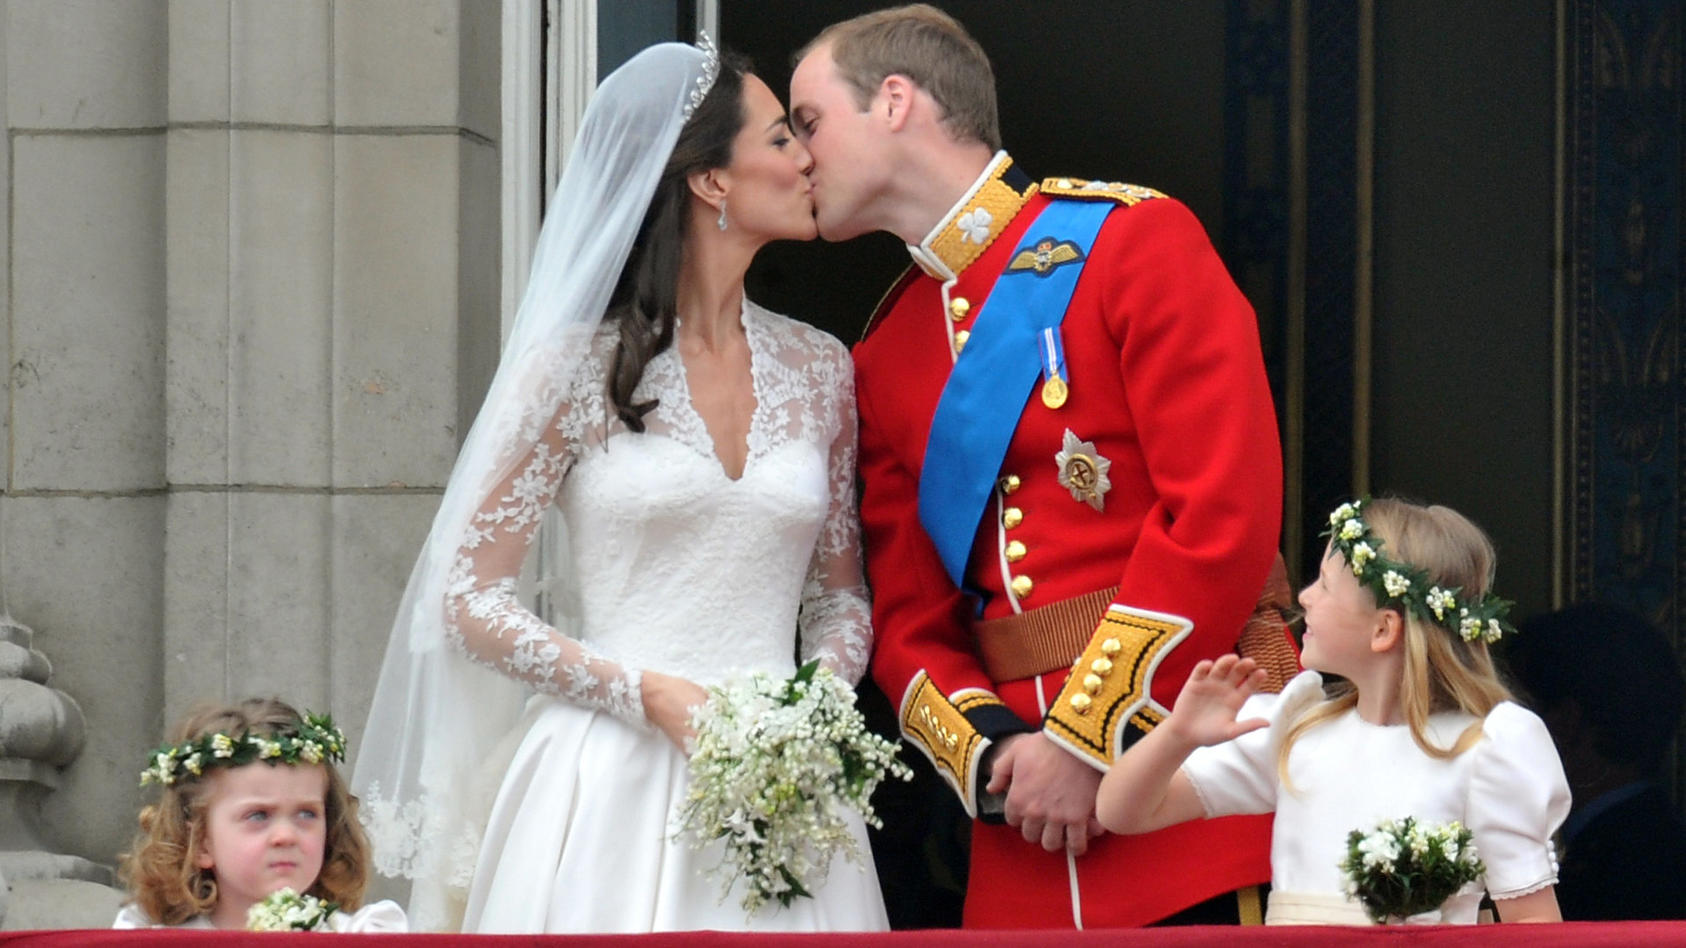 ARCHIV - 29.04.2011, Großbritannien, London: Prinz William und seine Ehefrau Herzogin Catherine küssen sich an ihrem Hochzeitstag auf dem Balkon des Buckingham-Palaste.  Herzogin Kate feiert am 09.01.2022 ihren 40. Geburtstag. (zu dpa-Korr "Ähnlichke